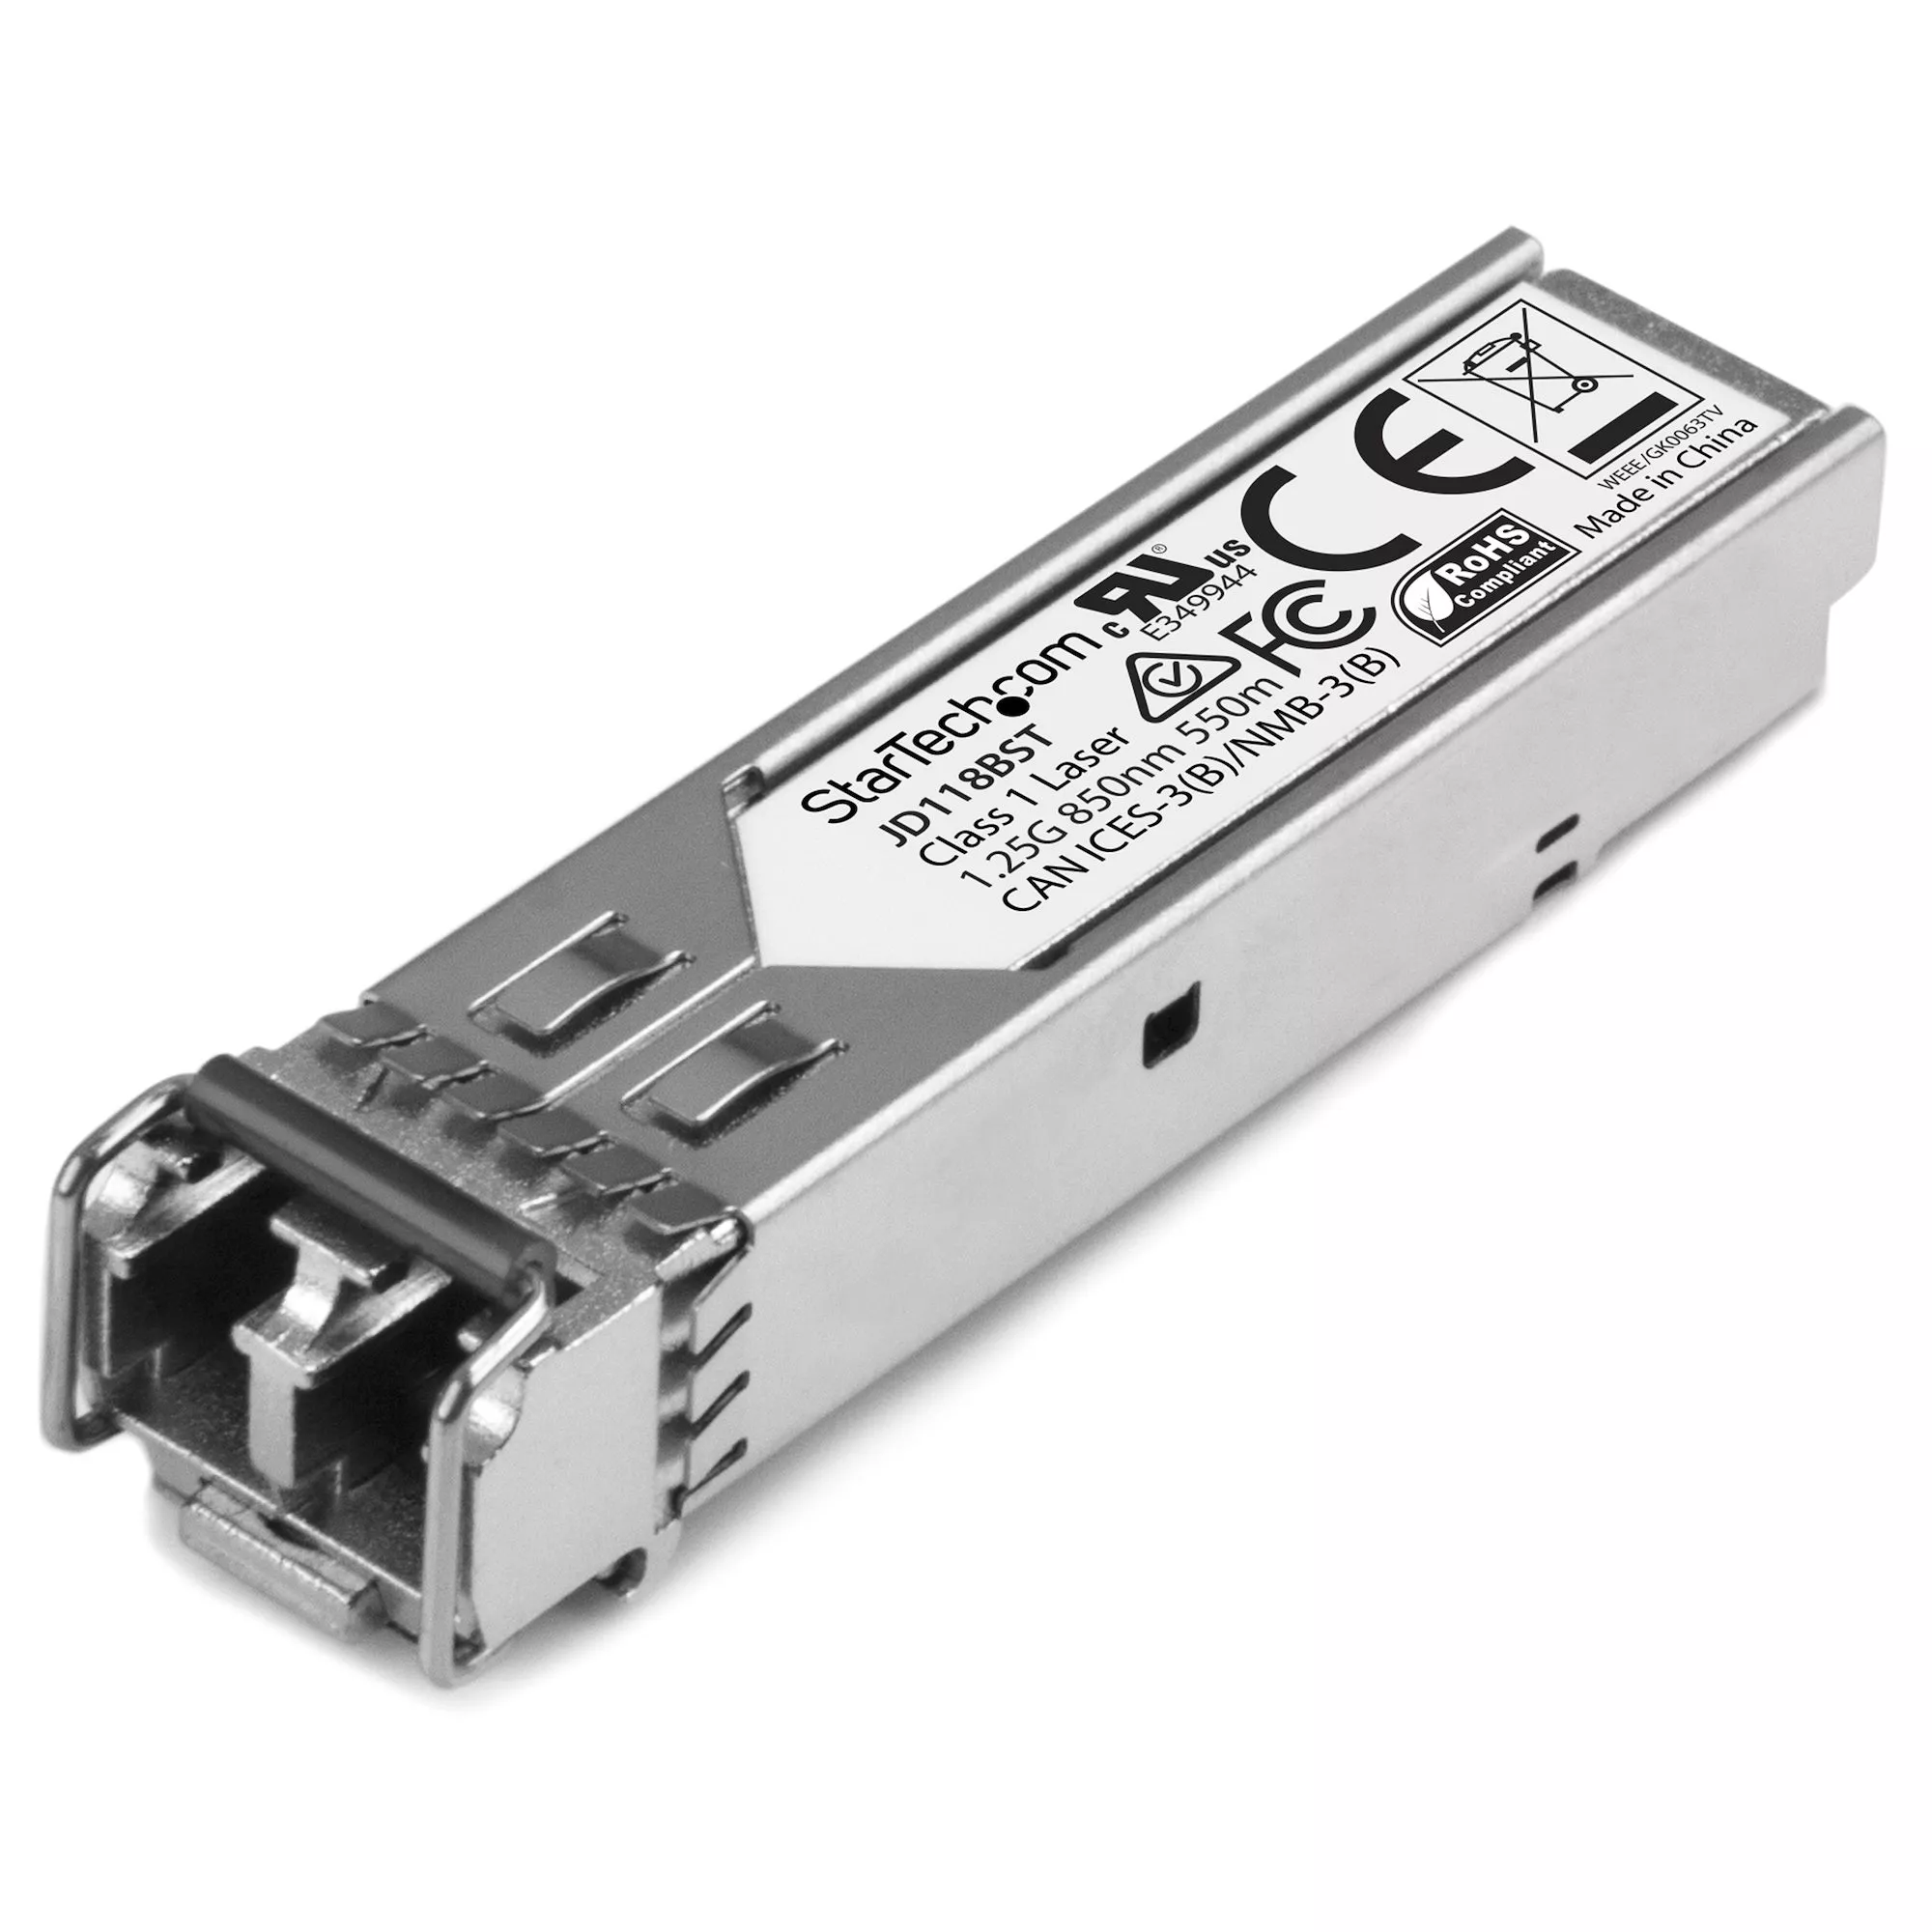 Revendeur officiel Switchs et Hubs StarTech.com Module SFP GBIC compatible HPE JD118B